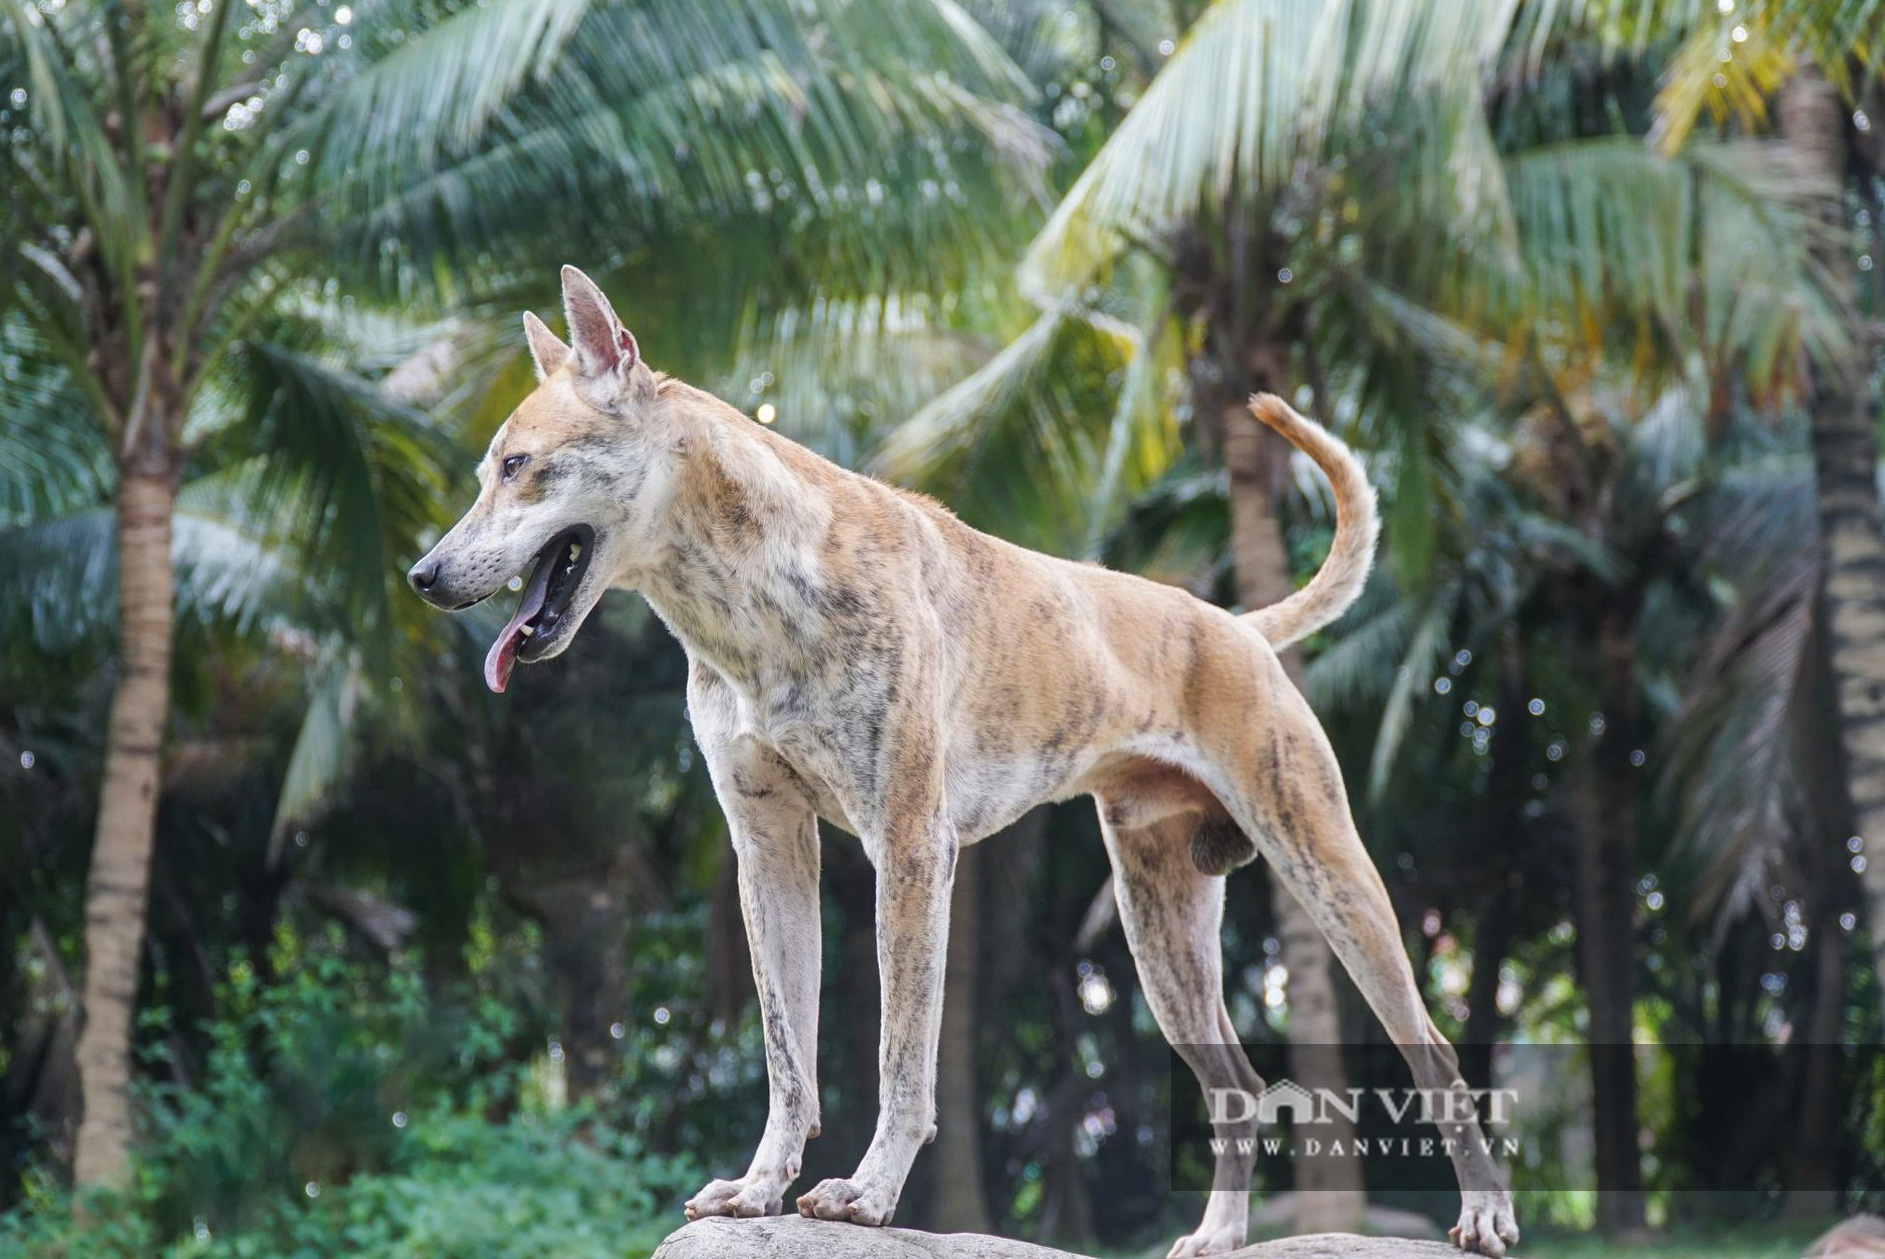 Chó Phú Quốc: Chó Phú Quốc là giống chó trung thành và thân thiện với con người nhất. Họ có bộ lông rực rỡ và rất dễ thương. Nếu bạn đang tìm kiếm sự yêu thương và sự chung thuỷ, hãy xem ảnh của chúng tôi để cảm nhận được giá trị của giống chó này.